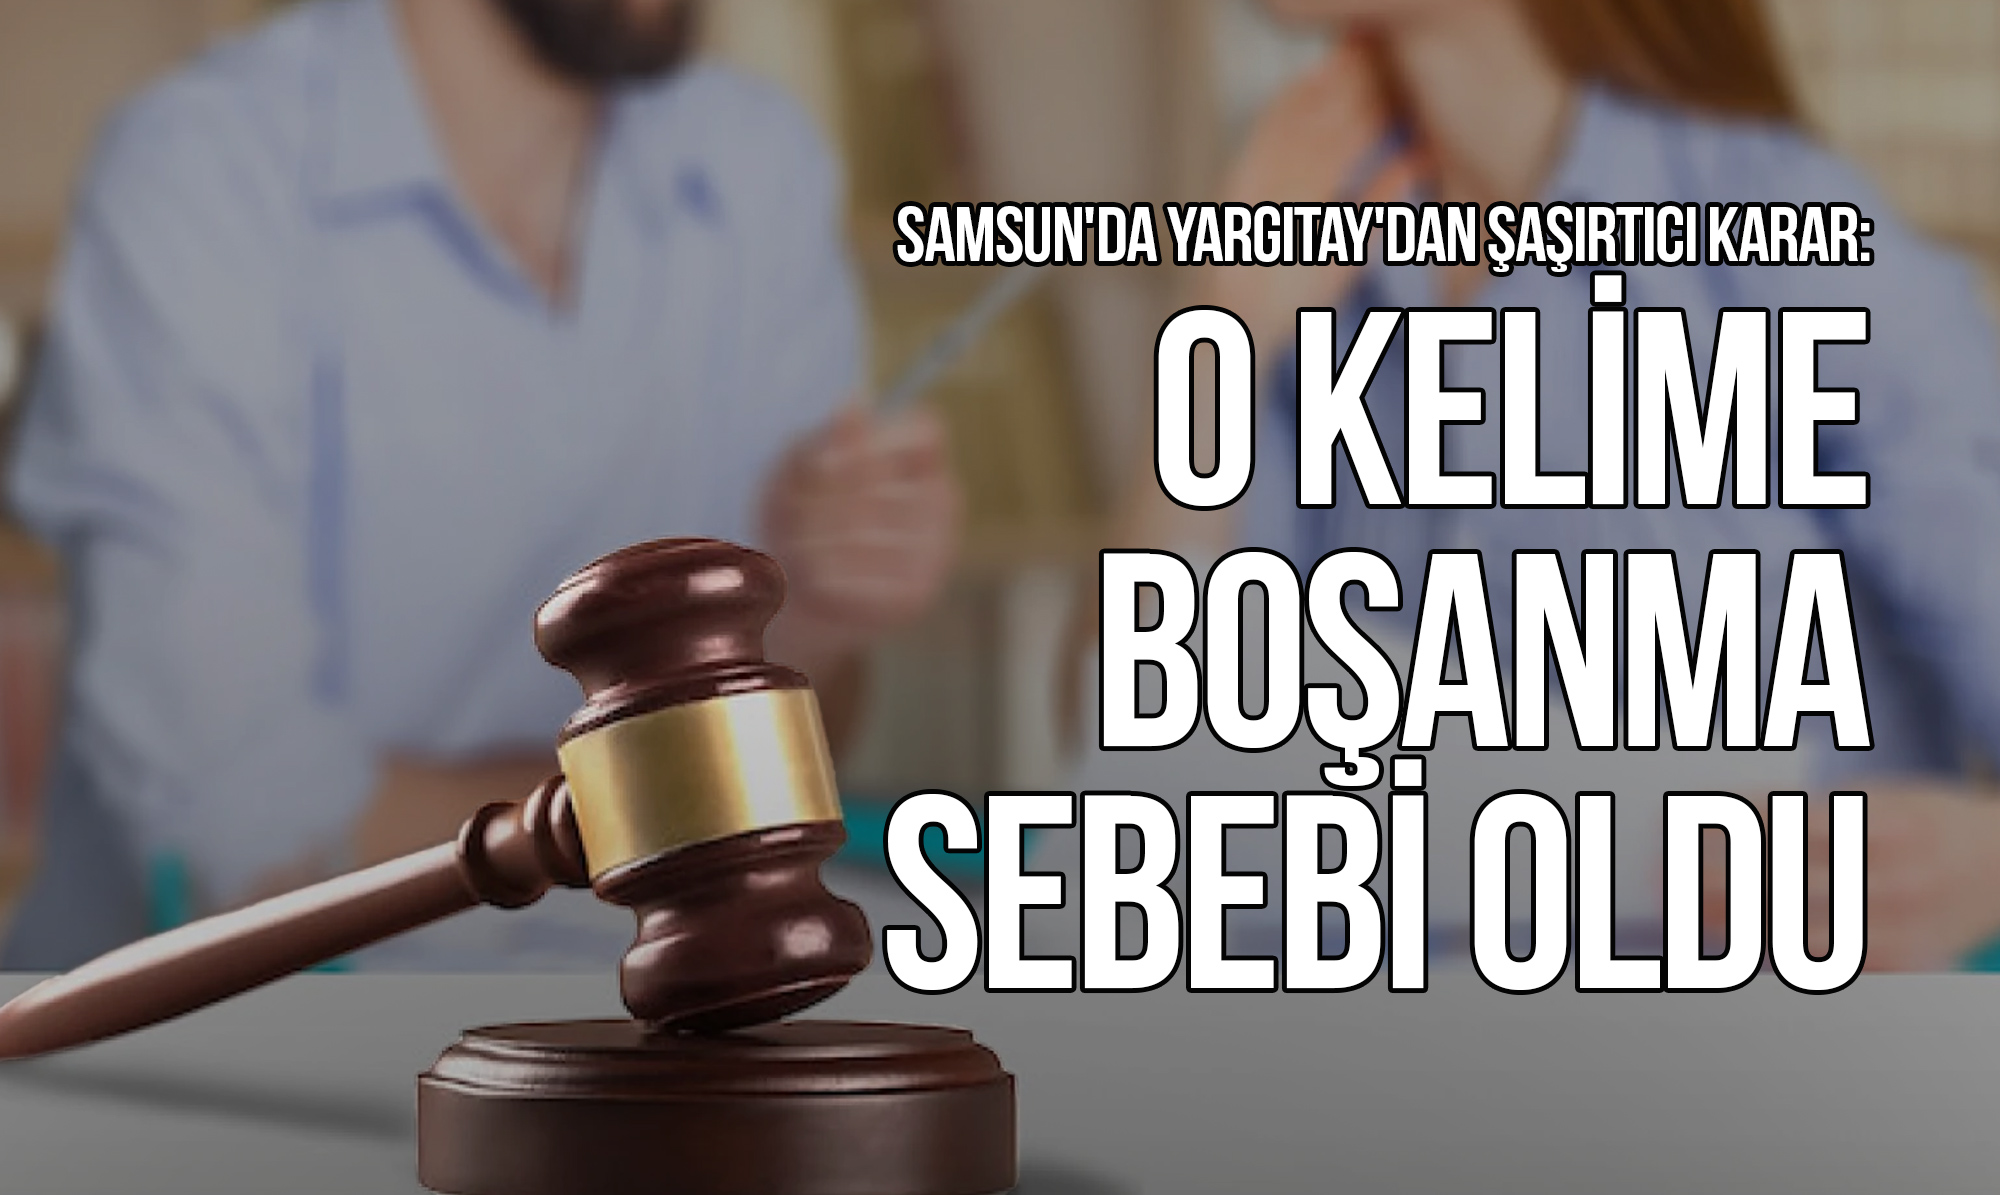 Samsun'da yargıtay'dan şaşırtıcı karar: o kelime boşanma sebebi oldu